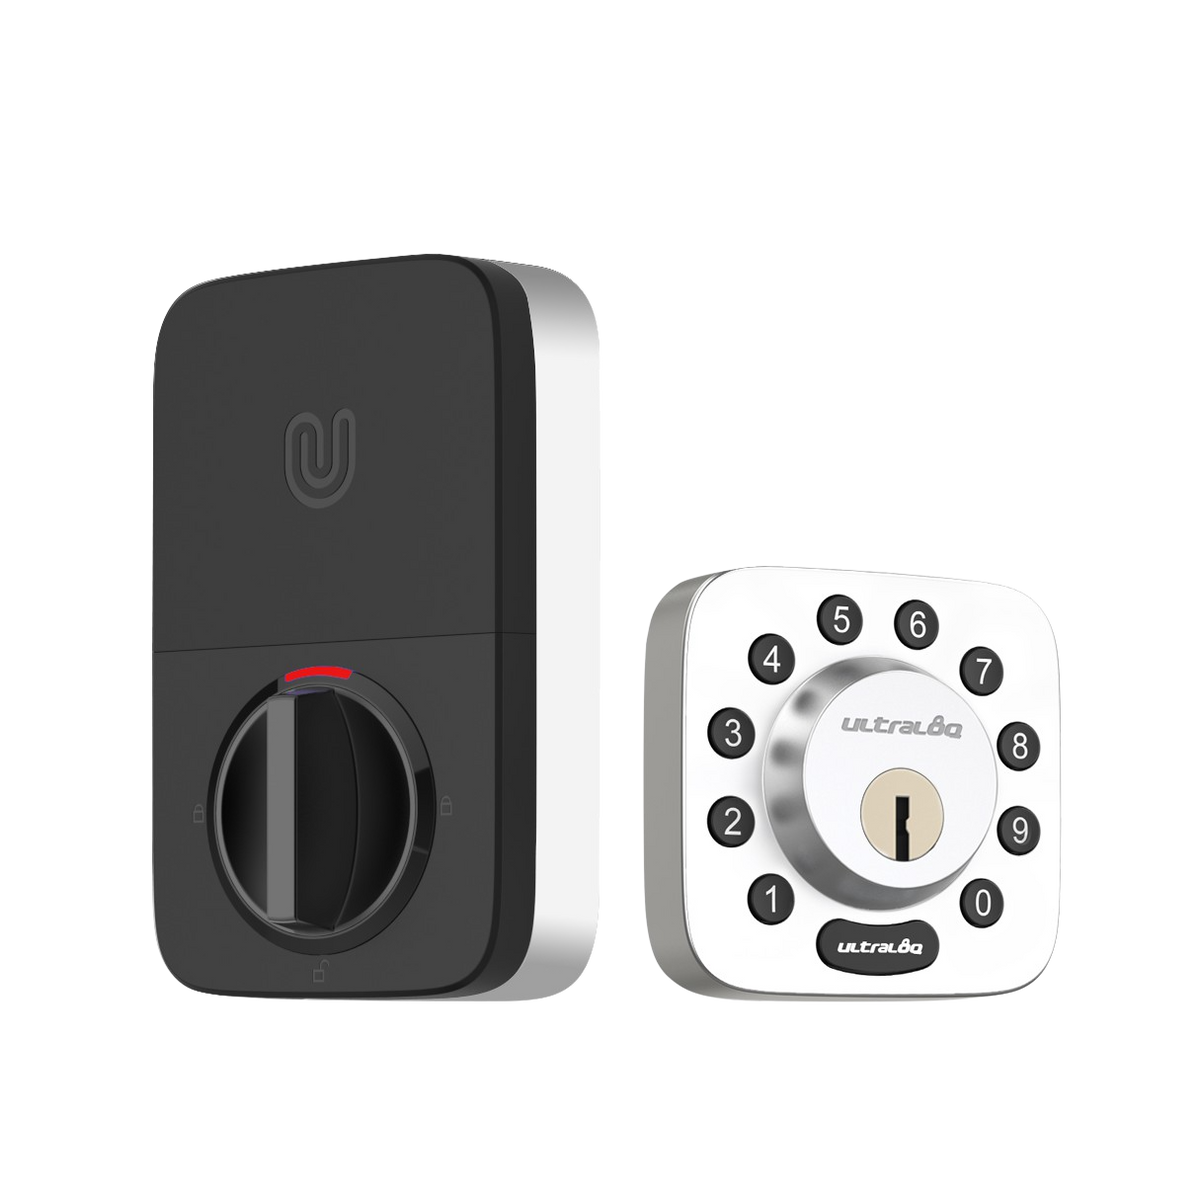 U-Tec U-BOLT 5-in-1 Bluetooth Enabled and Keypad Smart Deadbolt Door Lock in Satin Nickel New